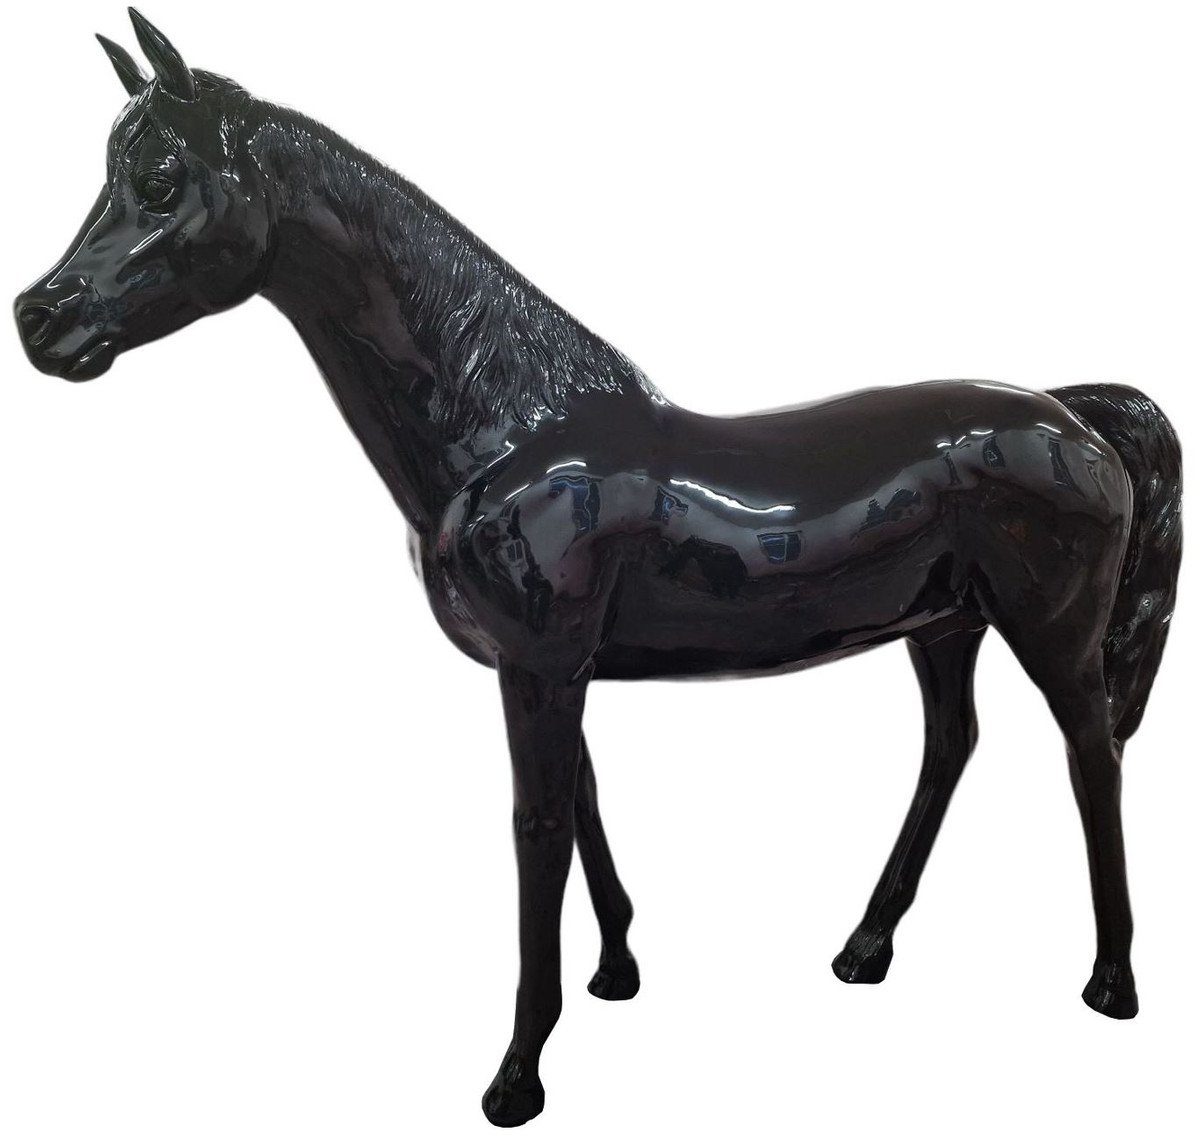 Casa Padrino Skulptur Casa Padrino Luxus Deko Skulptur Pferd Schwarz 220 x H. 195 cm - Riesige Gartenskulptur - Lebensgroße Skulptur - XXL Deko Skulptur - XXL Deko Figur - XXL Tierfigur - Luxus Deko Tierfigur